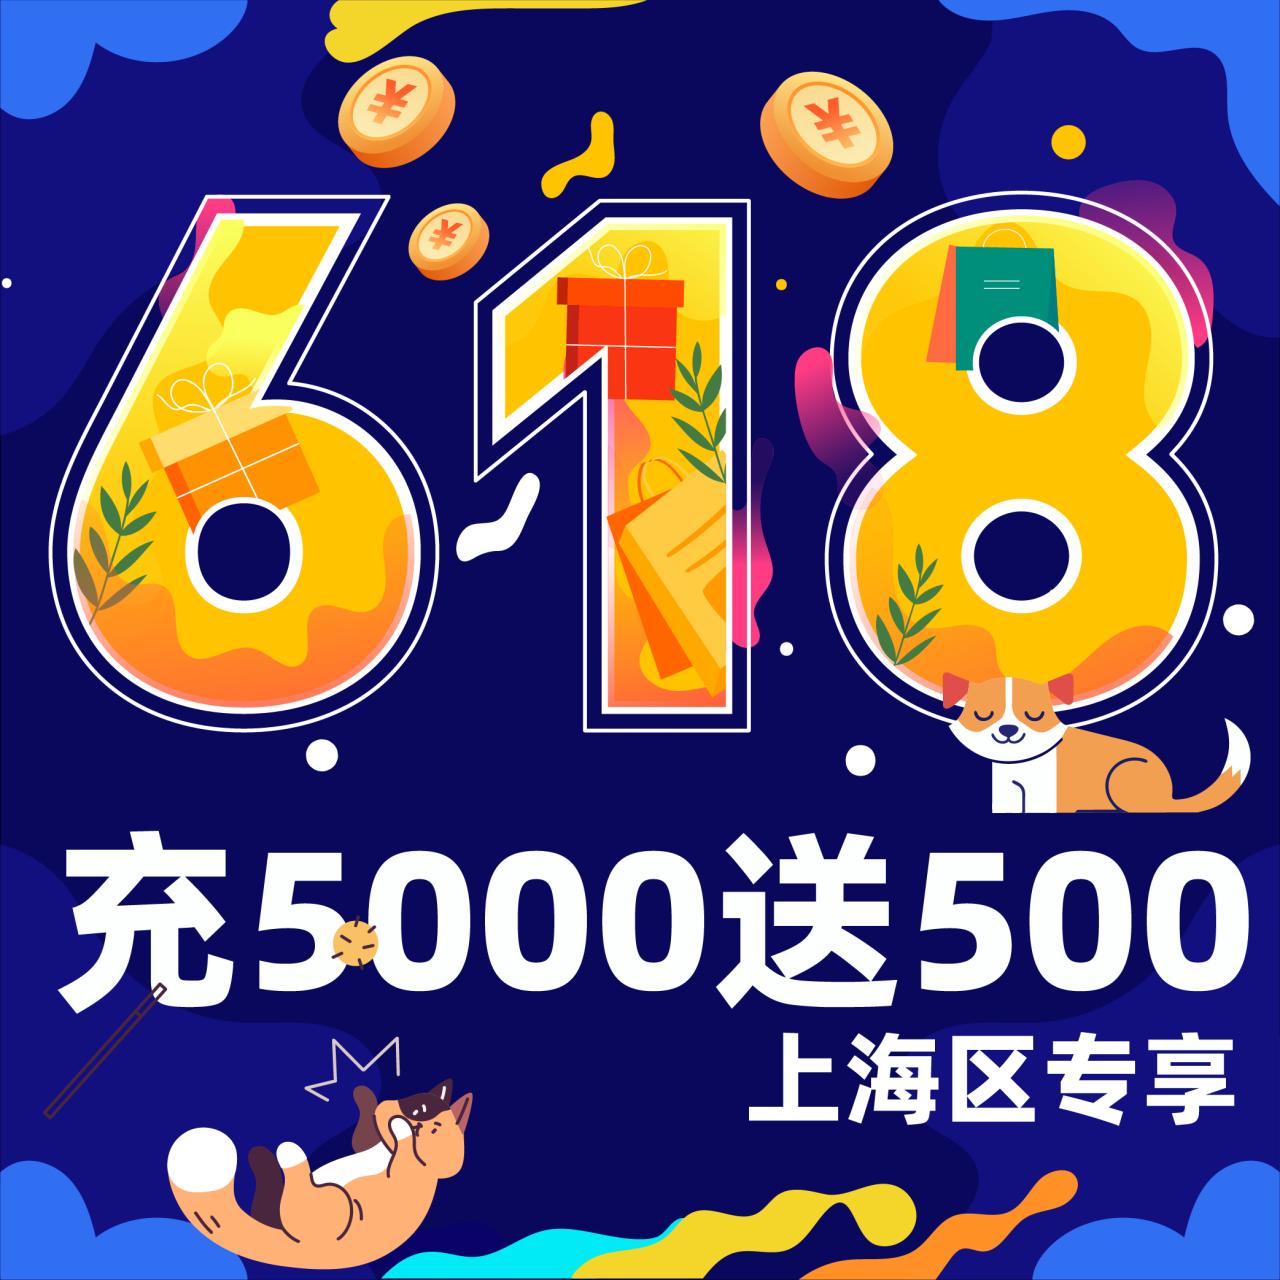 【618特惠】上海通用储值卡 充5000送500